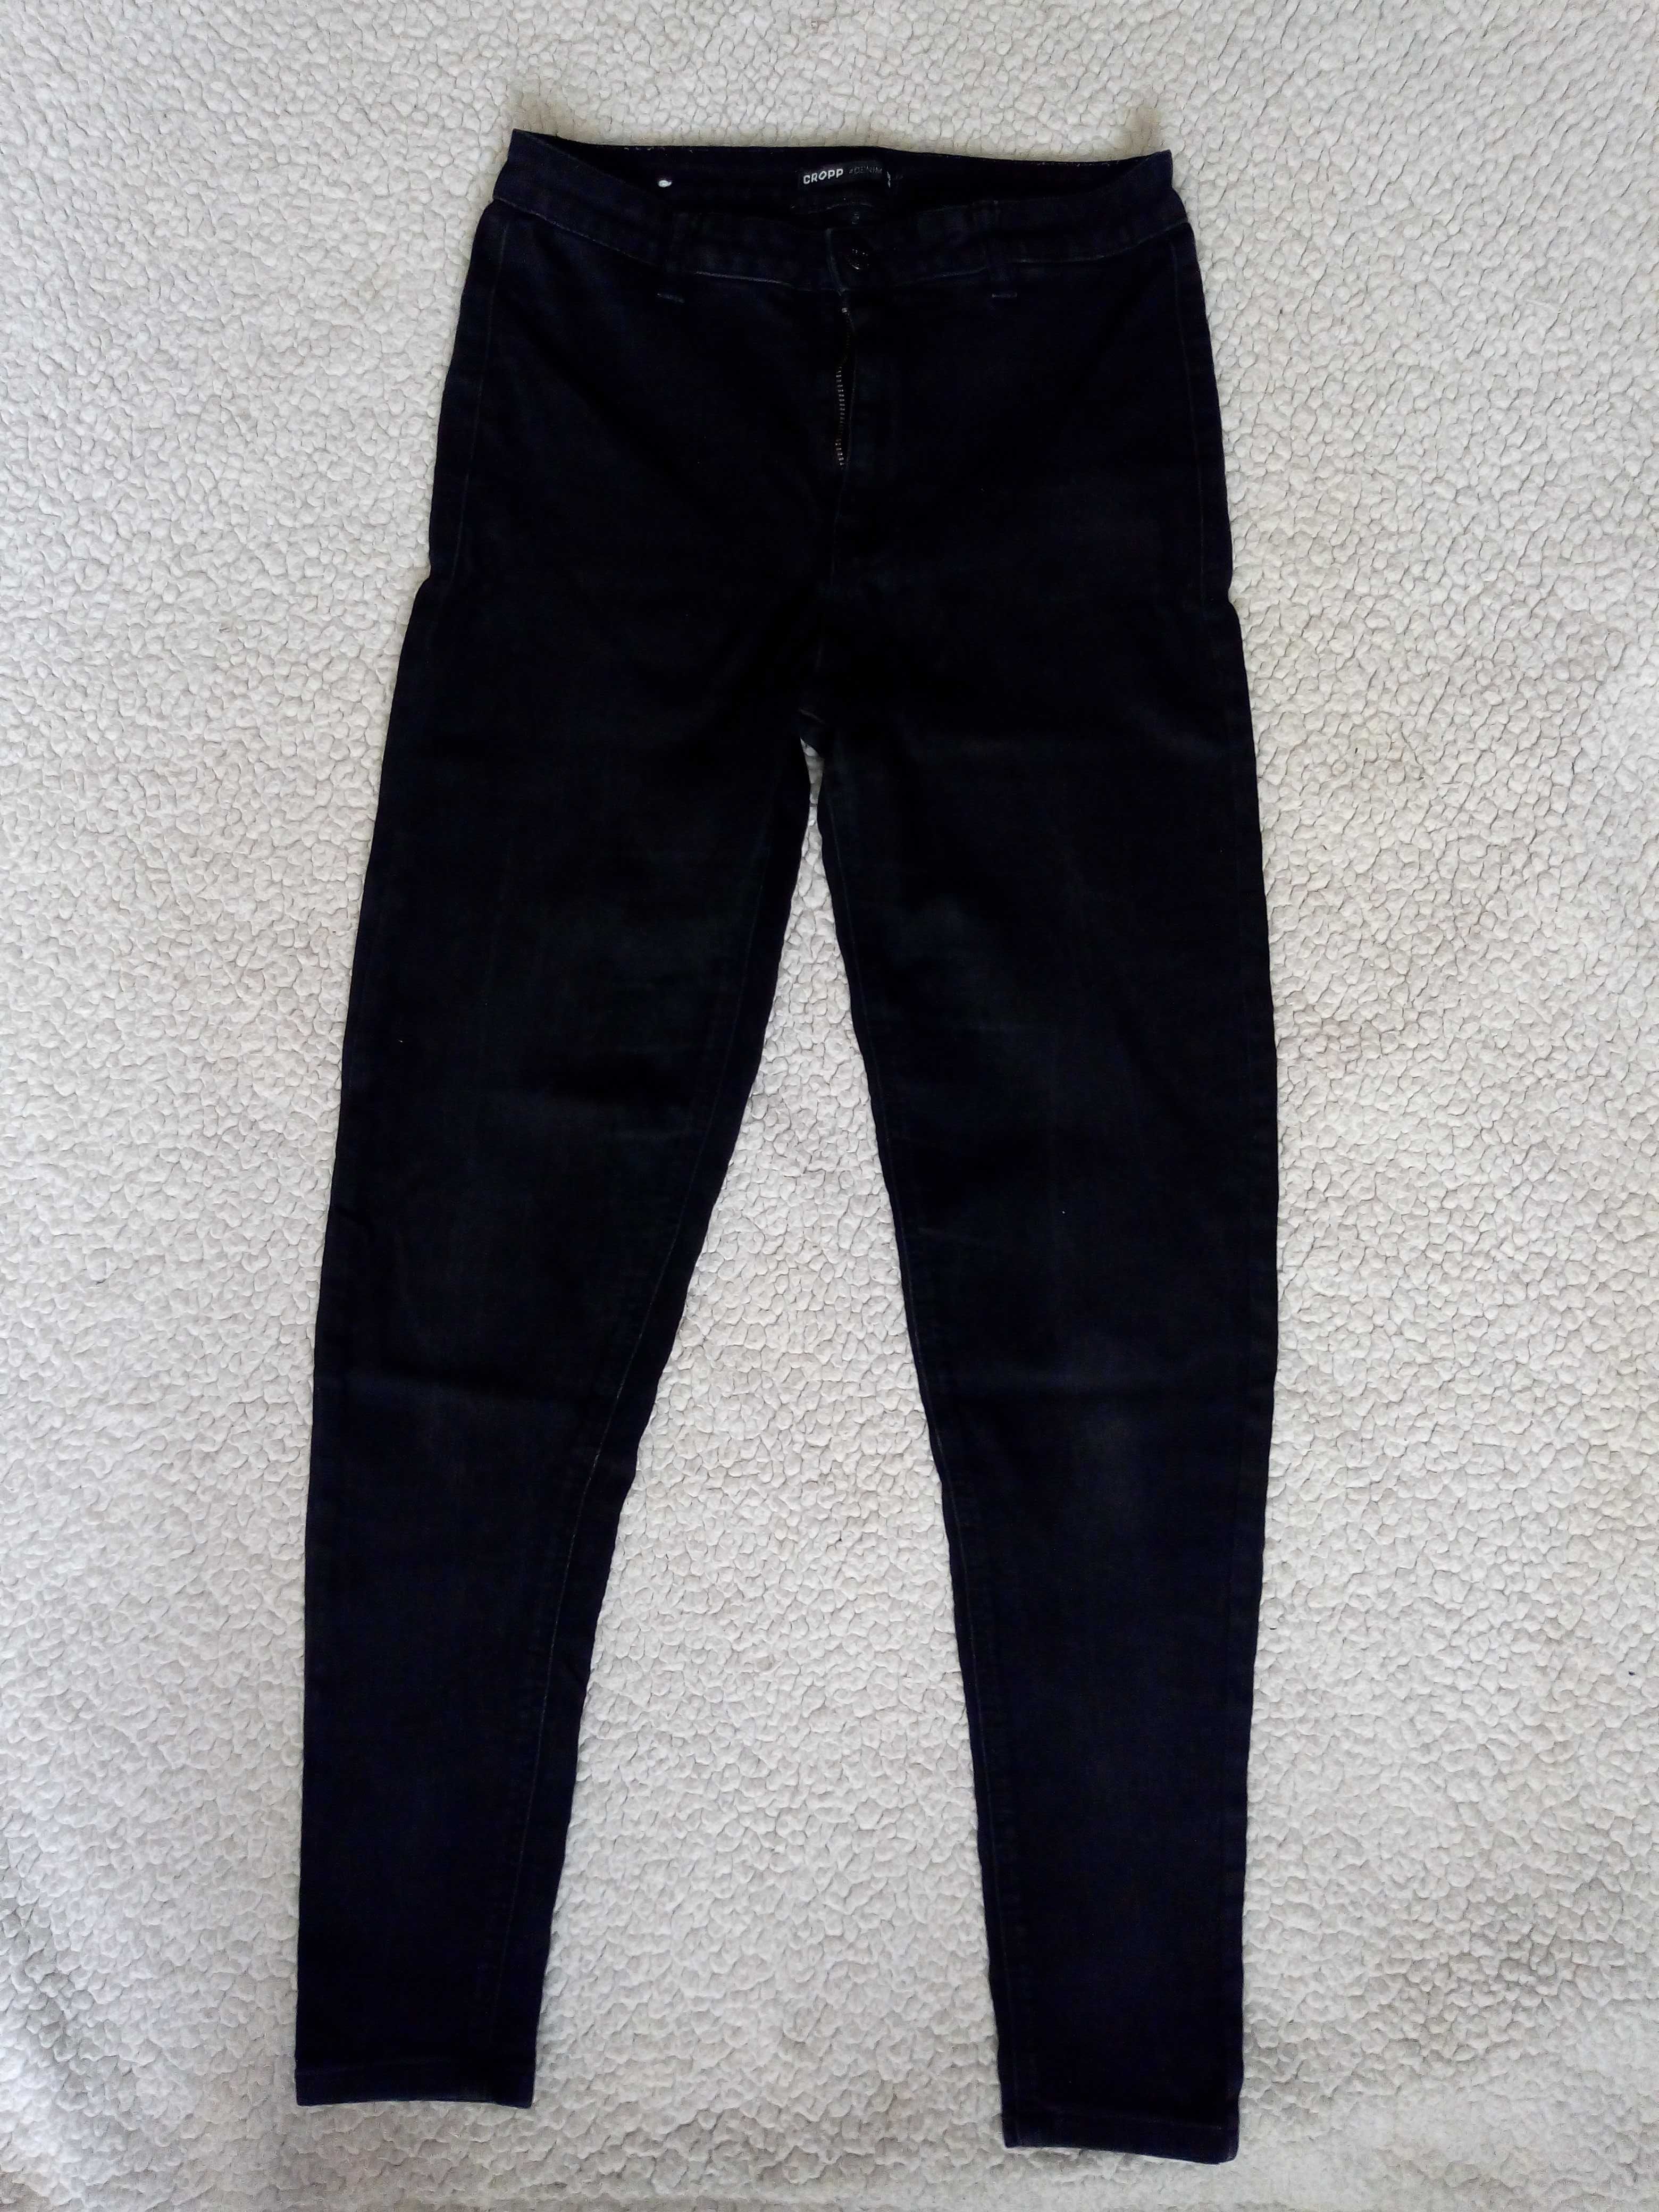 Spodnie dziewczęce jeansowe "Cropp" - czarne - M(38)